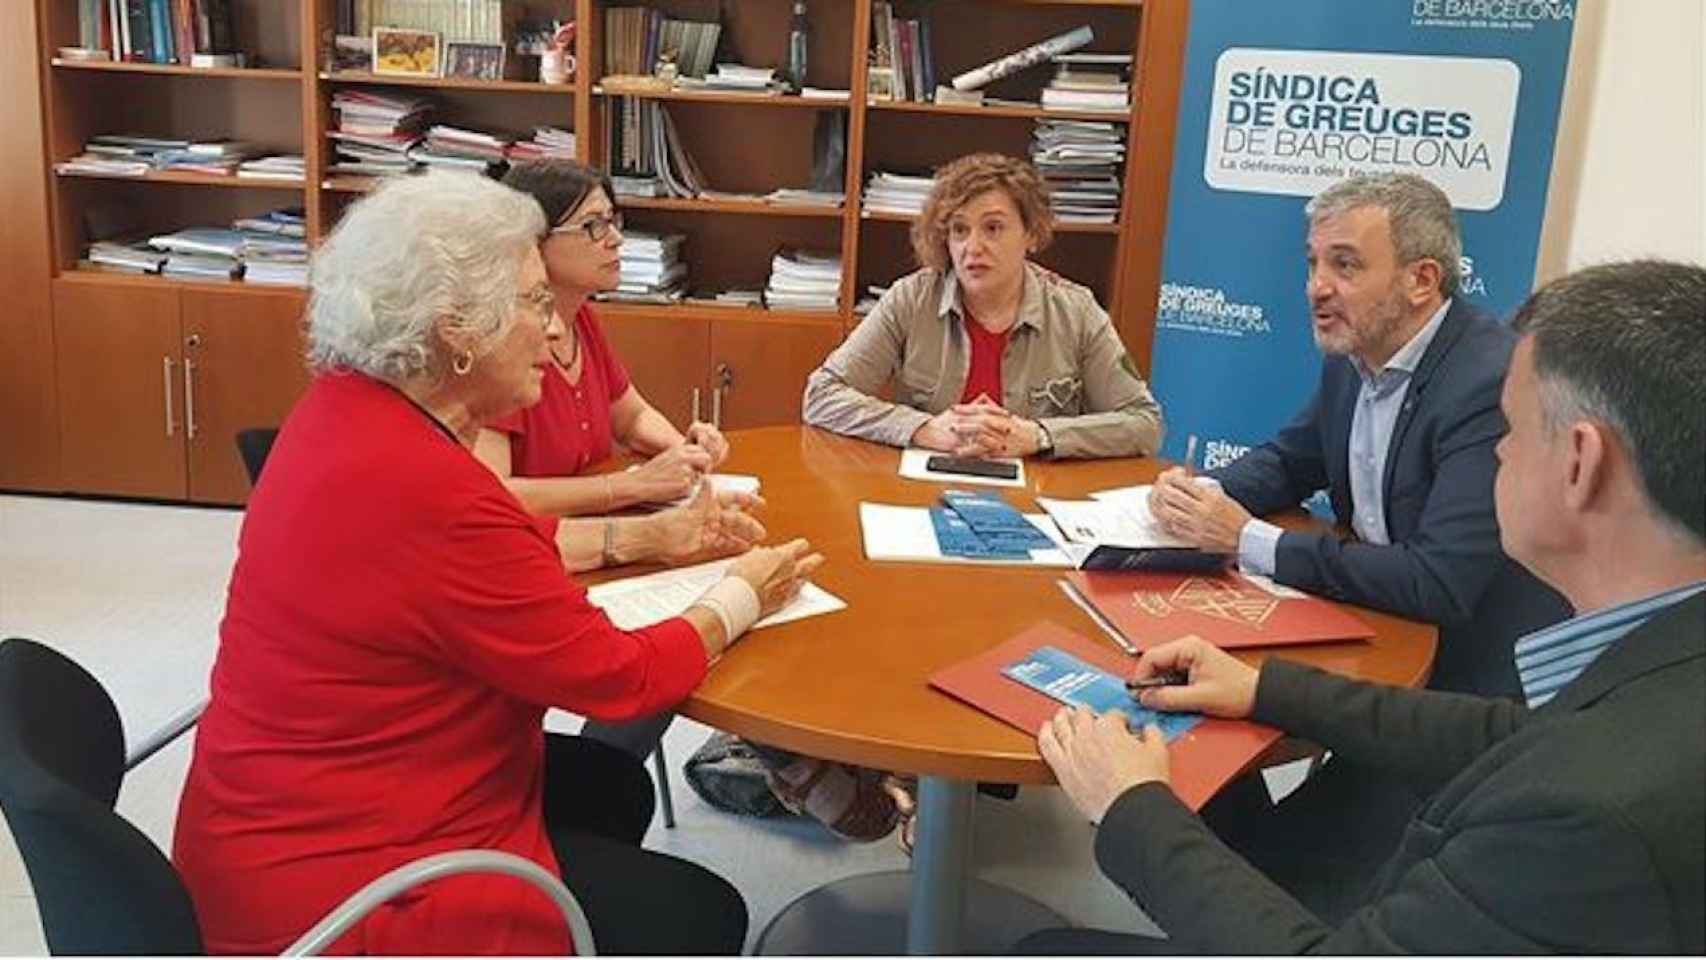 La actual síndica, Maria Assumpció Vilà (de rojo) en su despacho con Jaume Collboni y Montserrat Ballarín, ambos del PSC / EUROPA PRESS